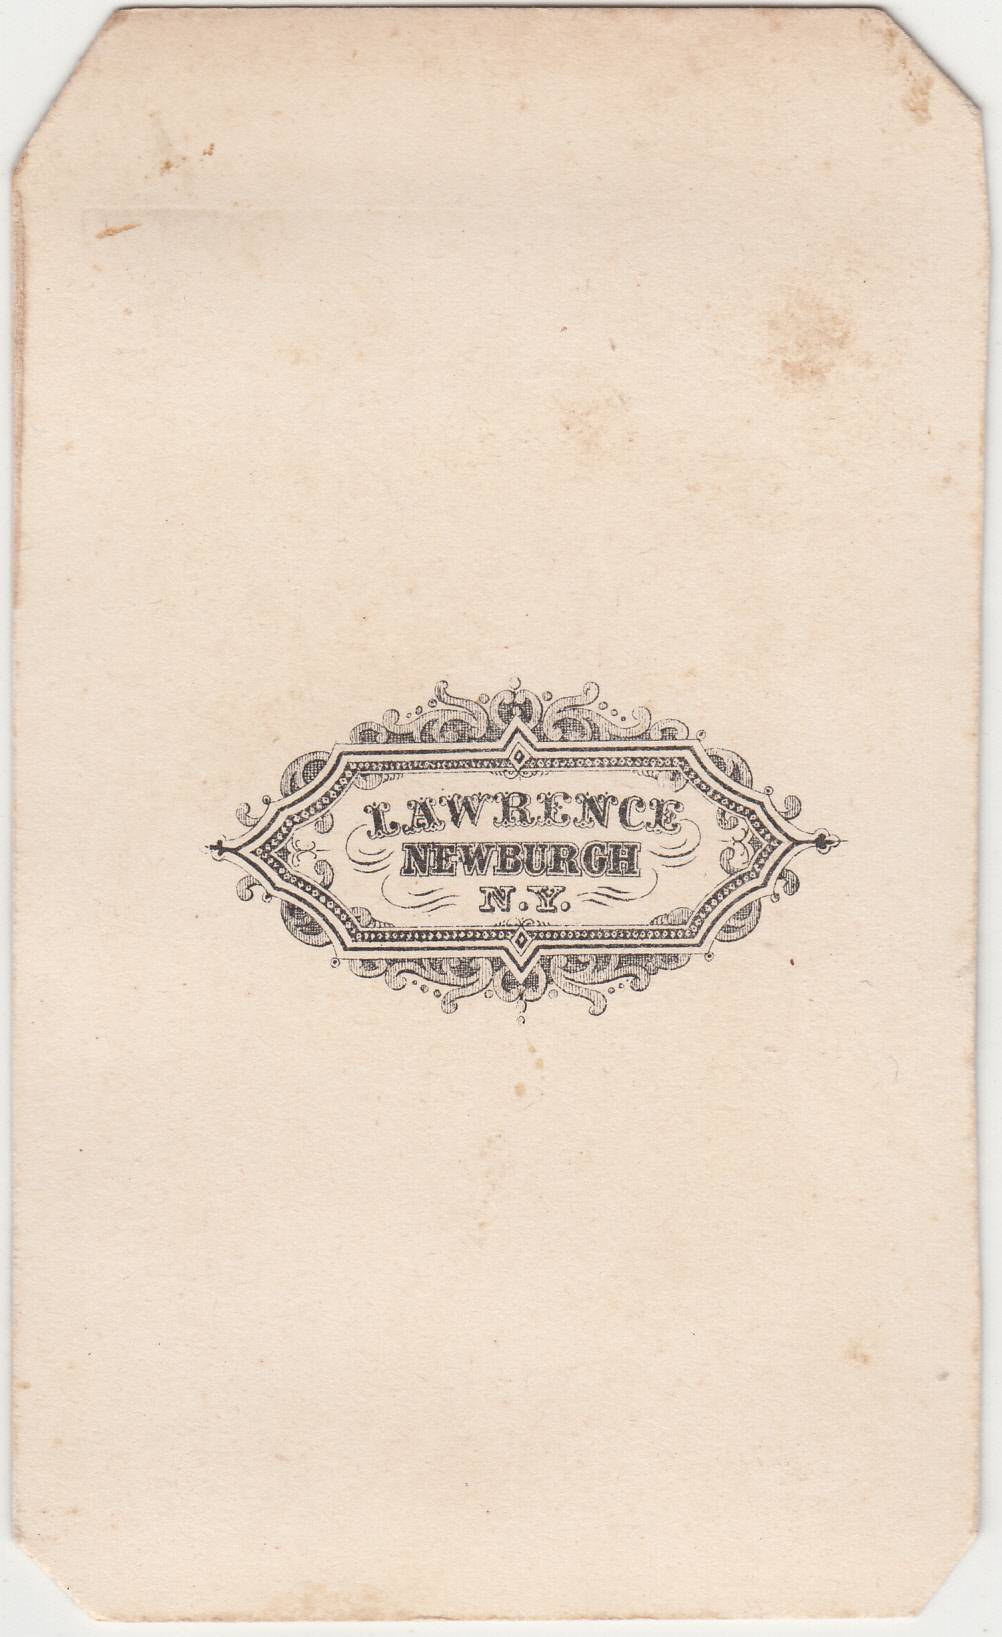 Lawrence, photographer of Newburgh, NY 1861-1866 - back